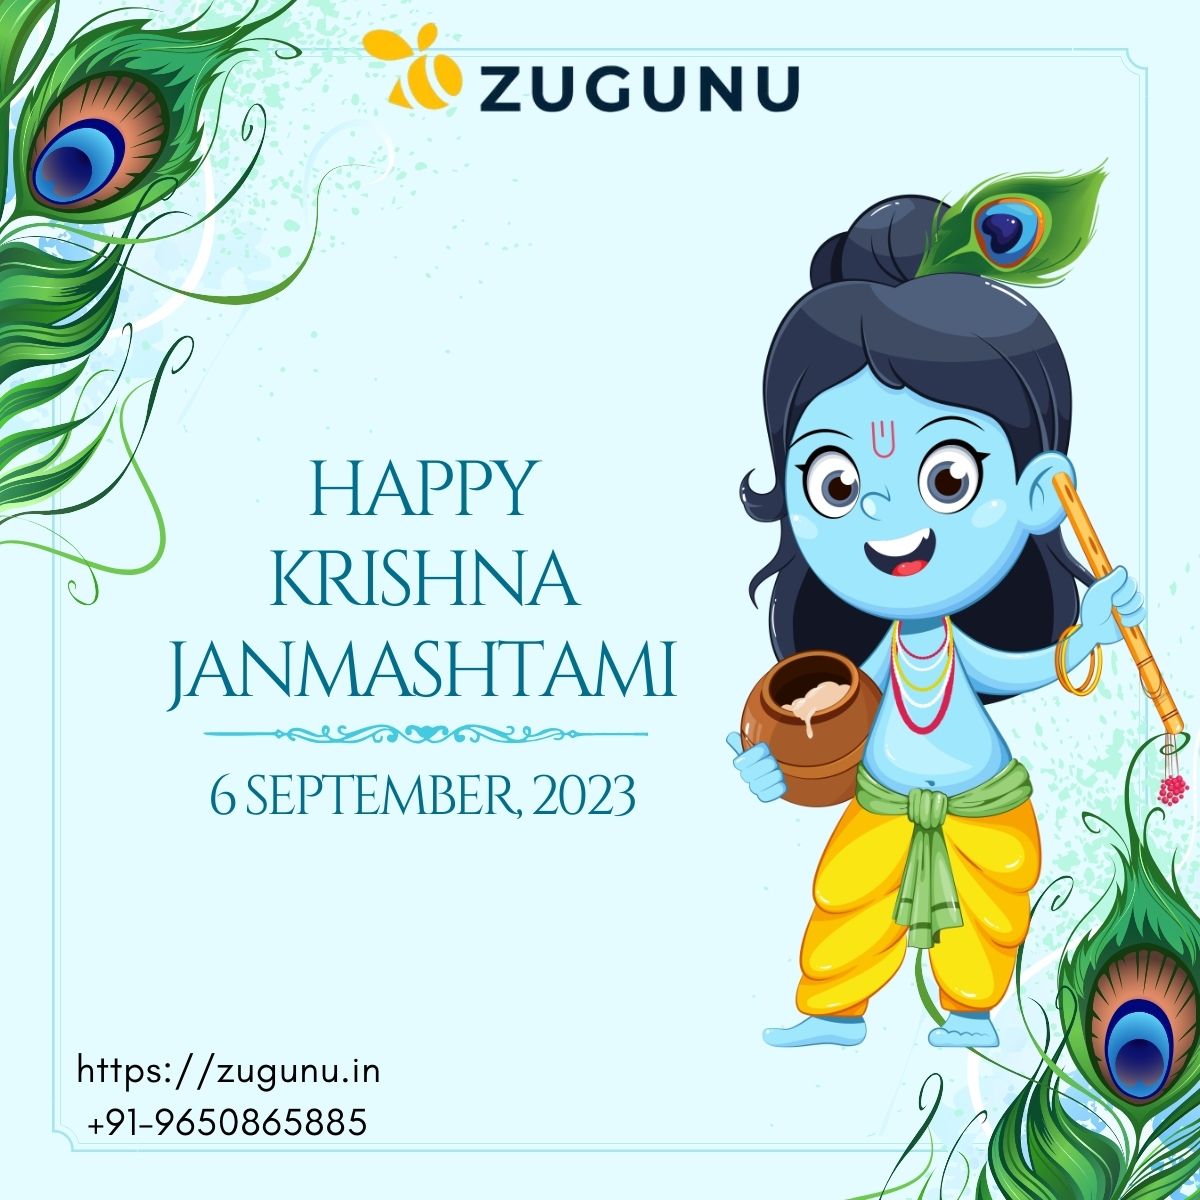 Happy Krishna Janmashtami A festival of love and compassion